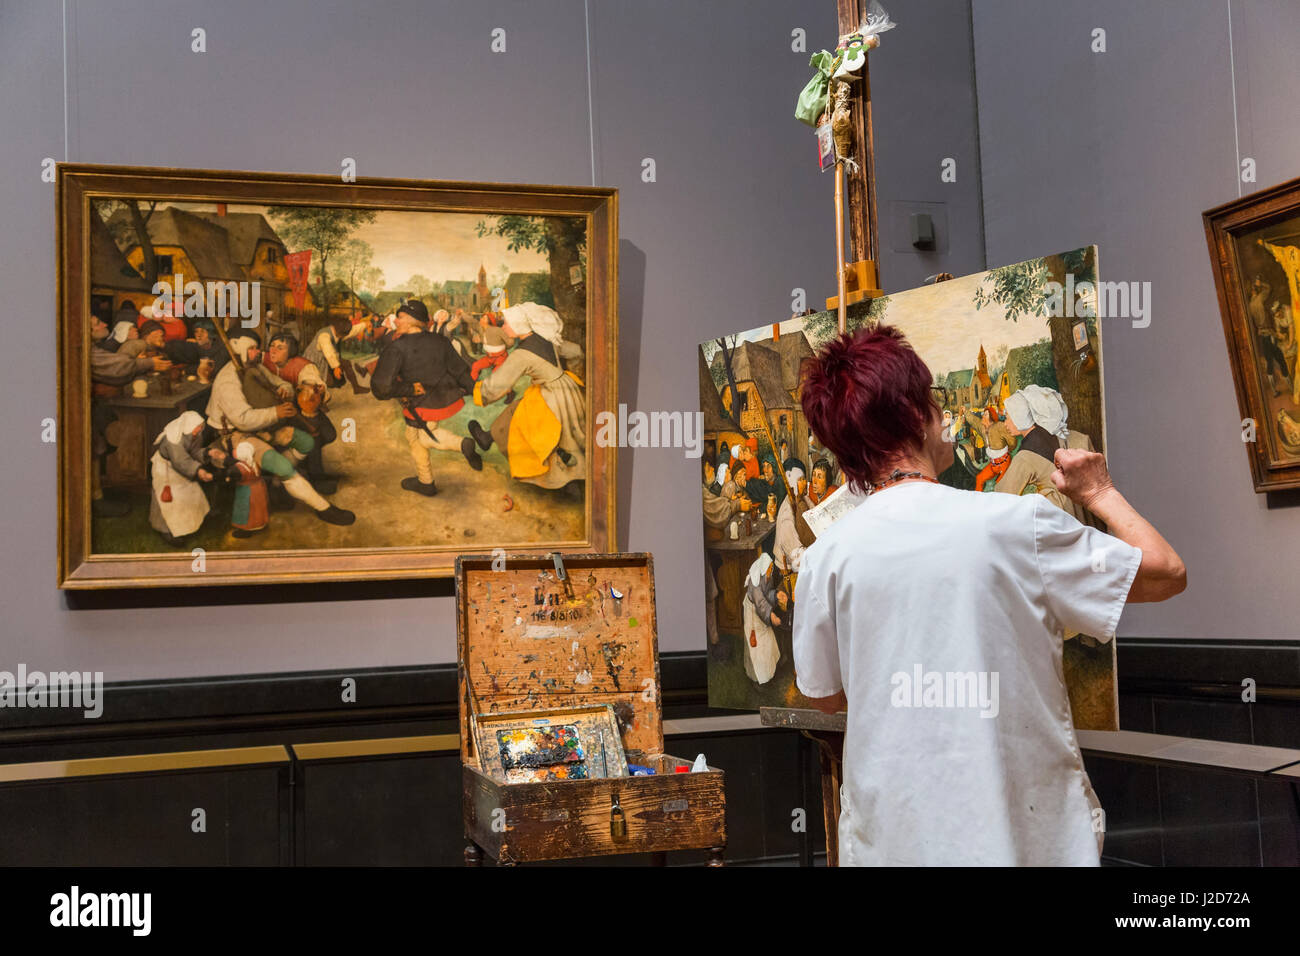 Kopieren von "Tanz der Bauern" von Pieter Bruegel, kunsthistorischen historische Kunst-Museum, Wien, Österreich Stockfoto